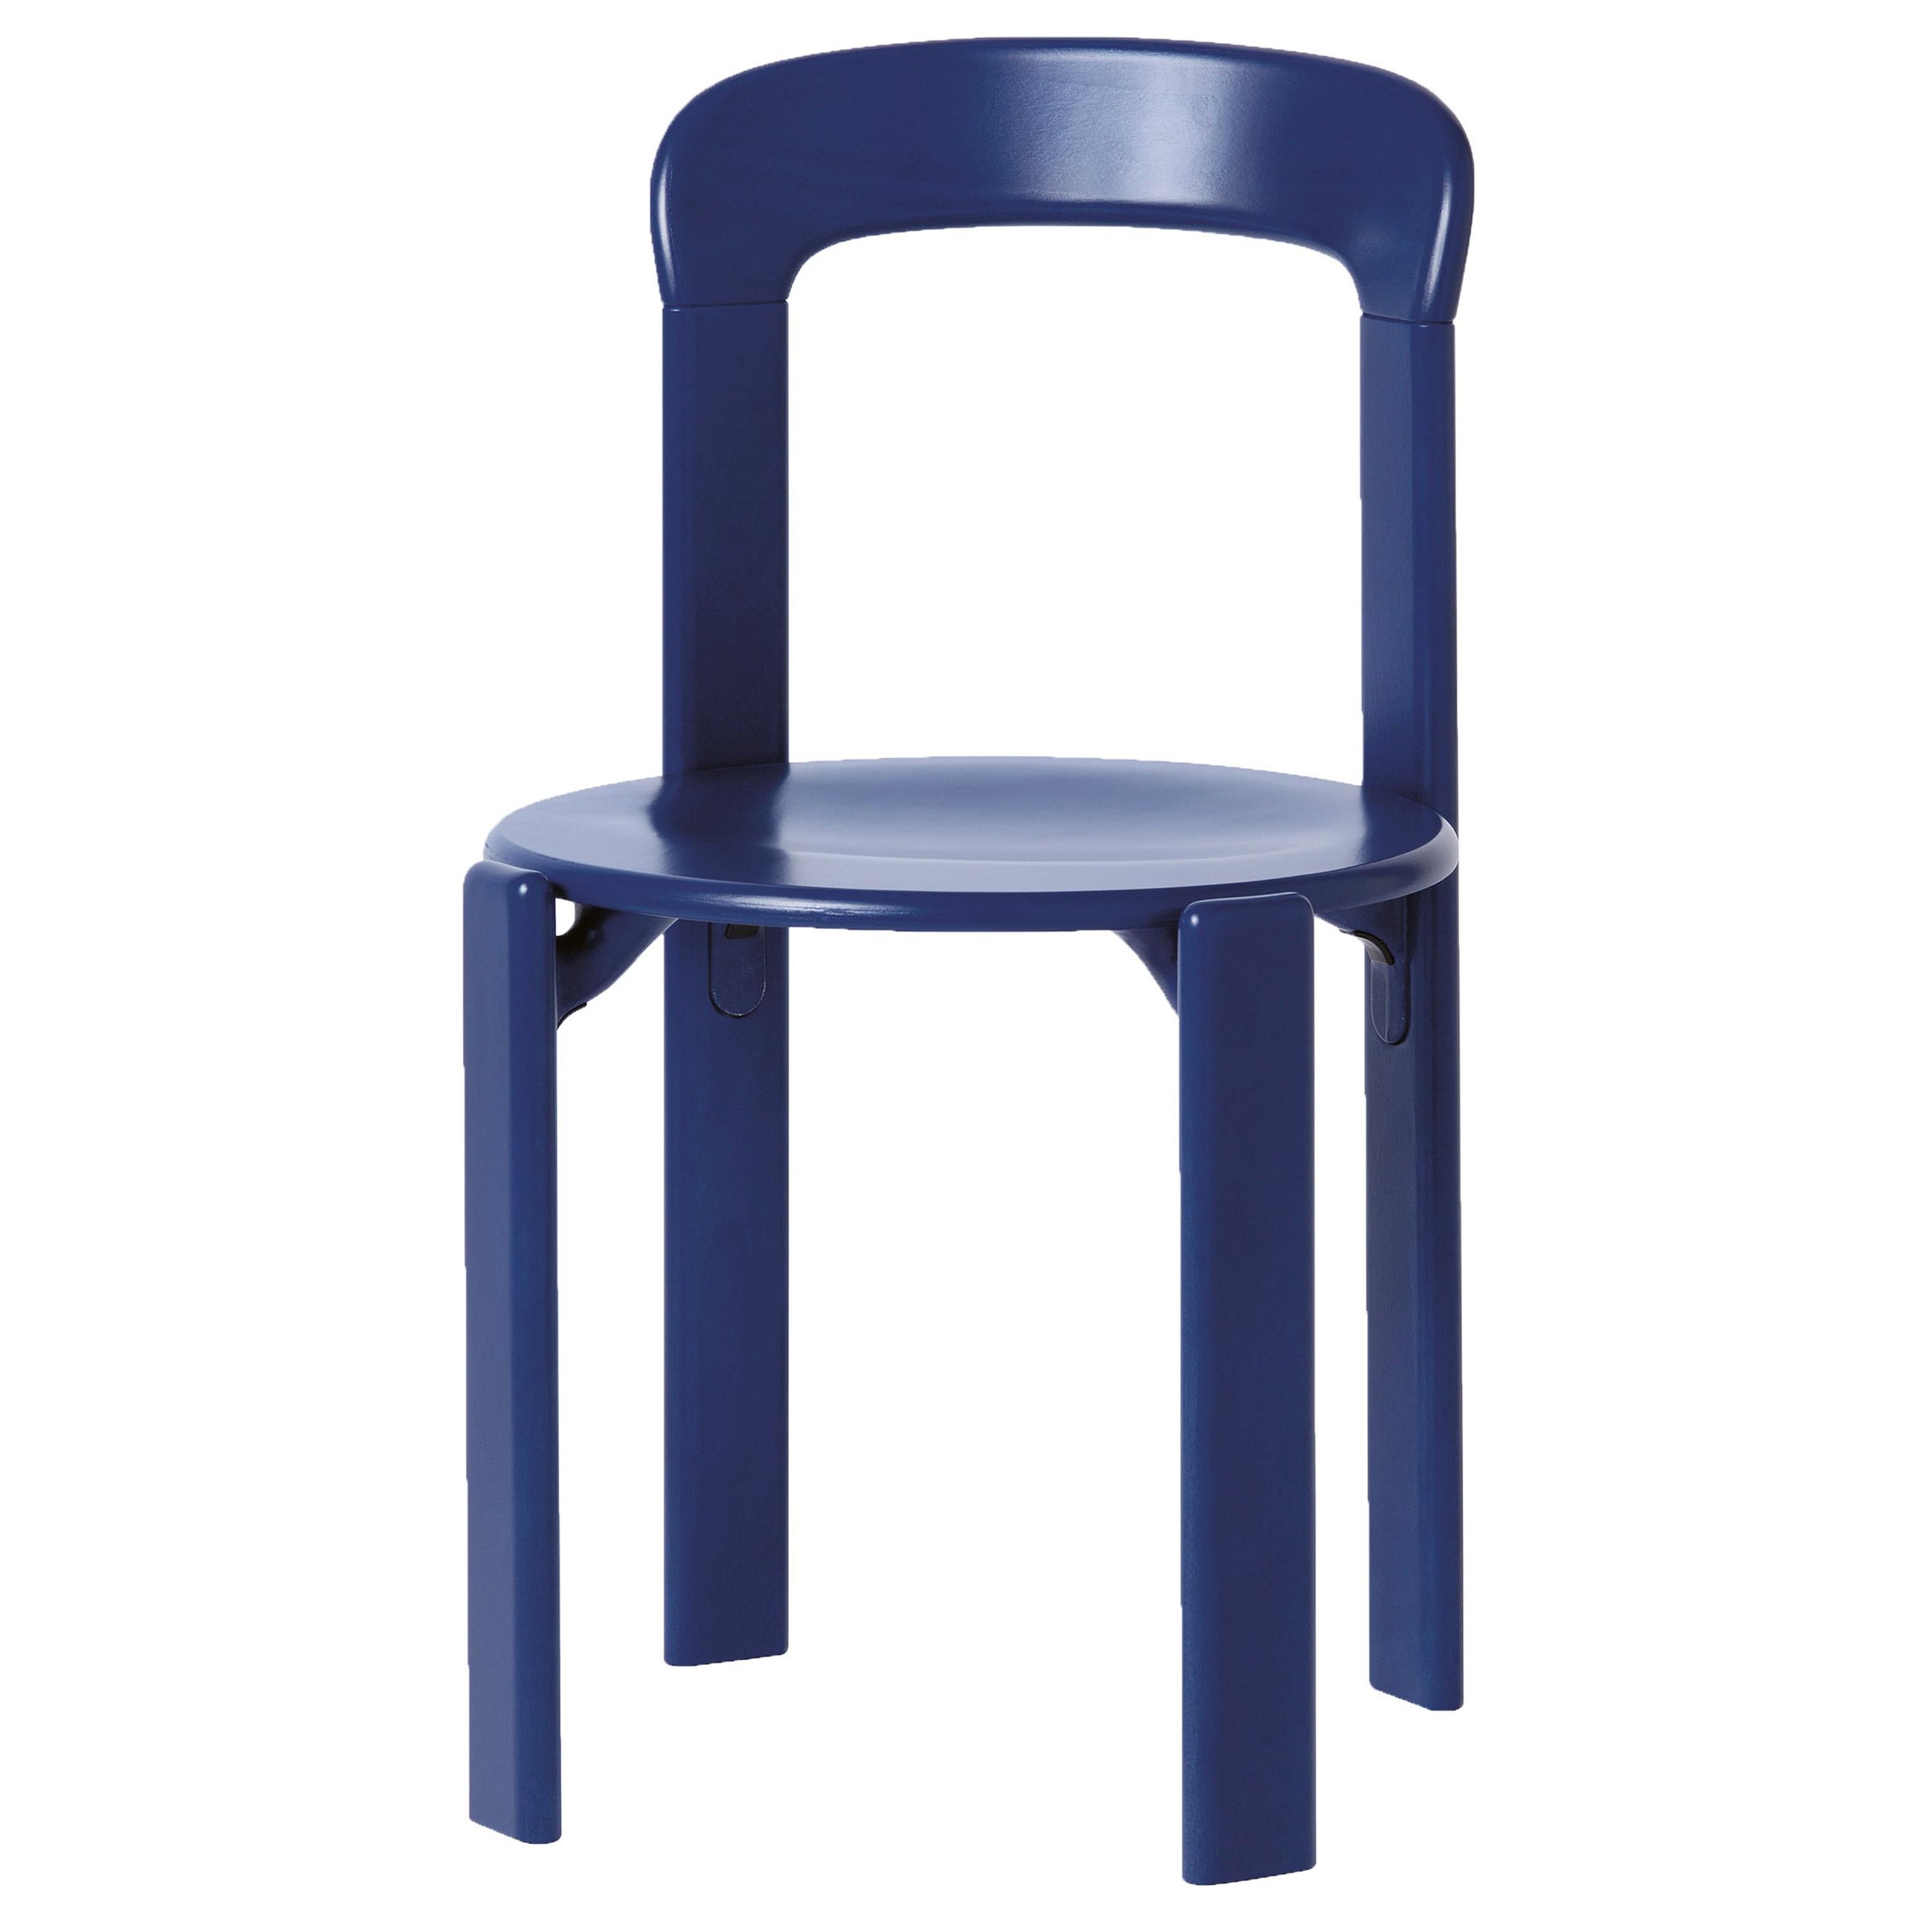 Mid-Century Modern, Rey Navy Blue Chair by Bruno Rey, Design 1971